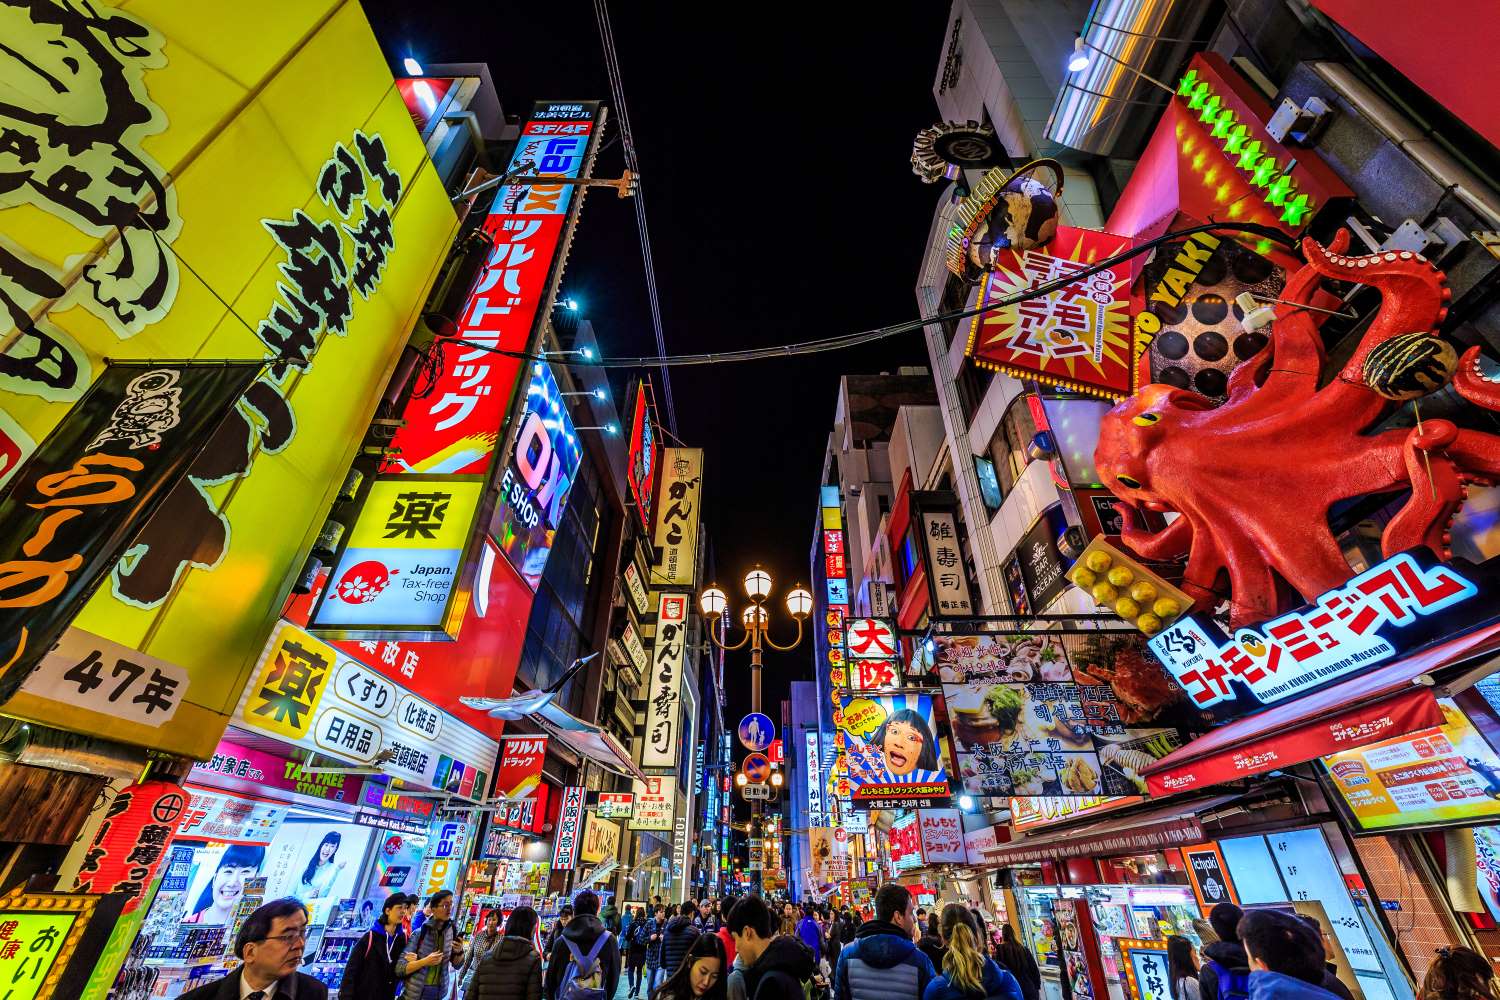 오사카성을 비롯한 오사카여행의 필수명소Best10 완전가이드 – Skyticket 여행 정보